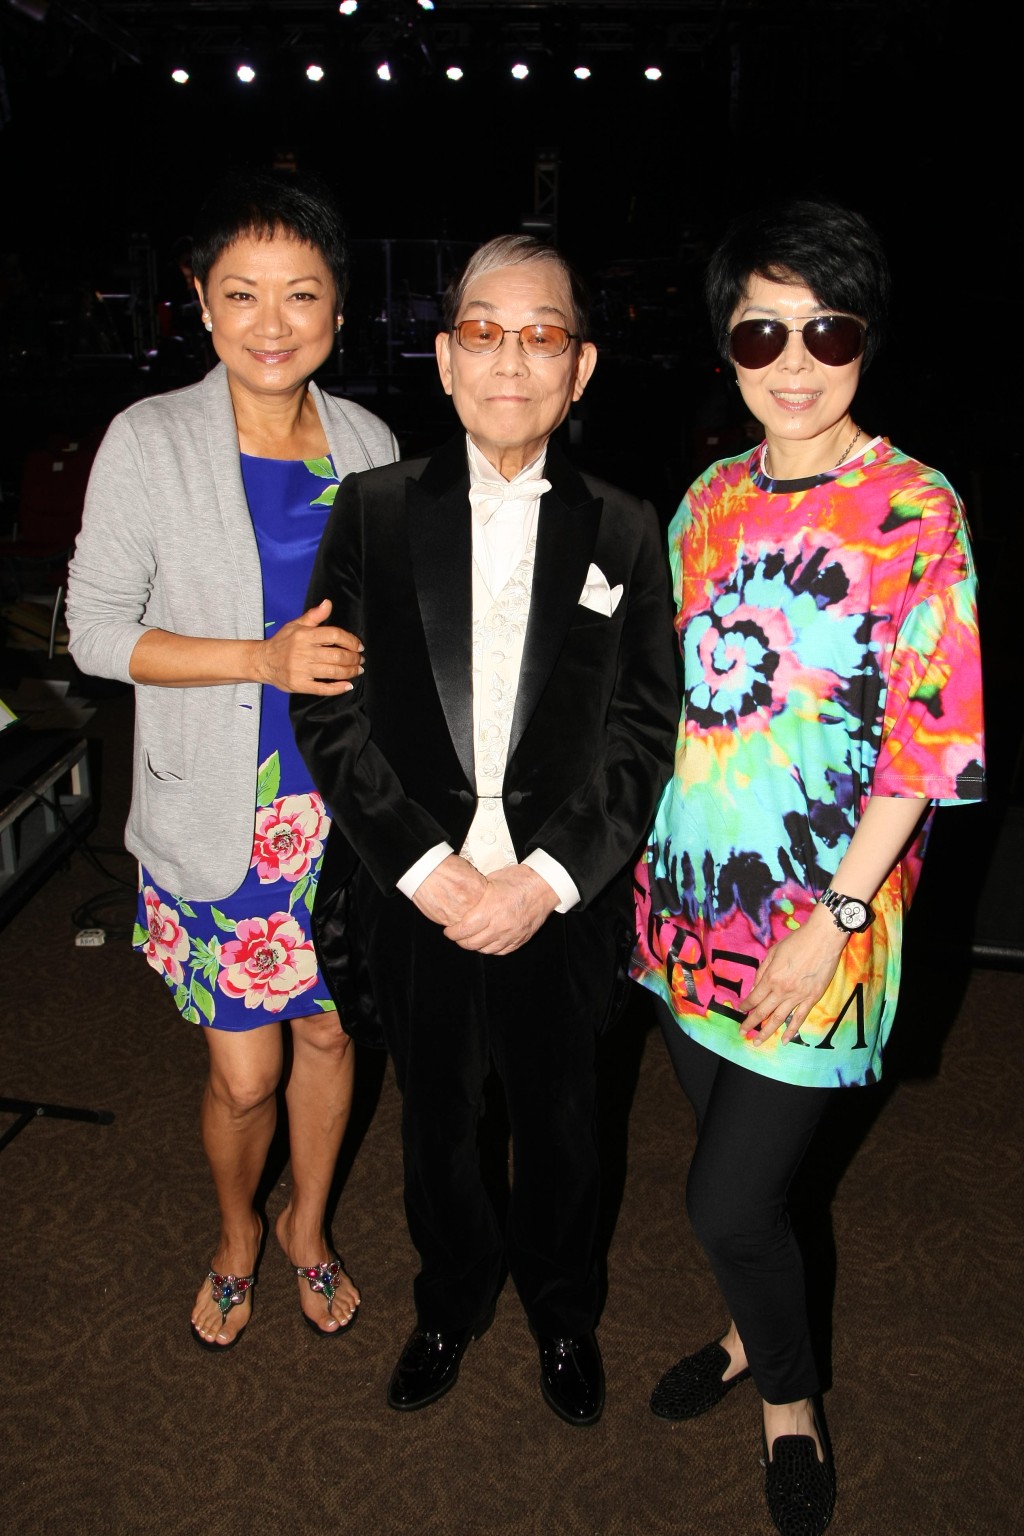 叶丽仪、顾嘉辉、关菊英在2015年于红馆举行的《顾嘉辉荣休演唱会》彩排。